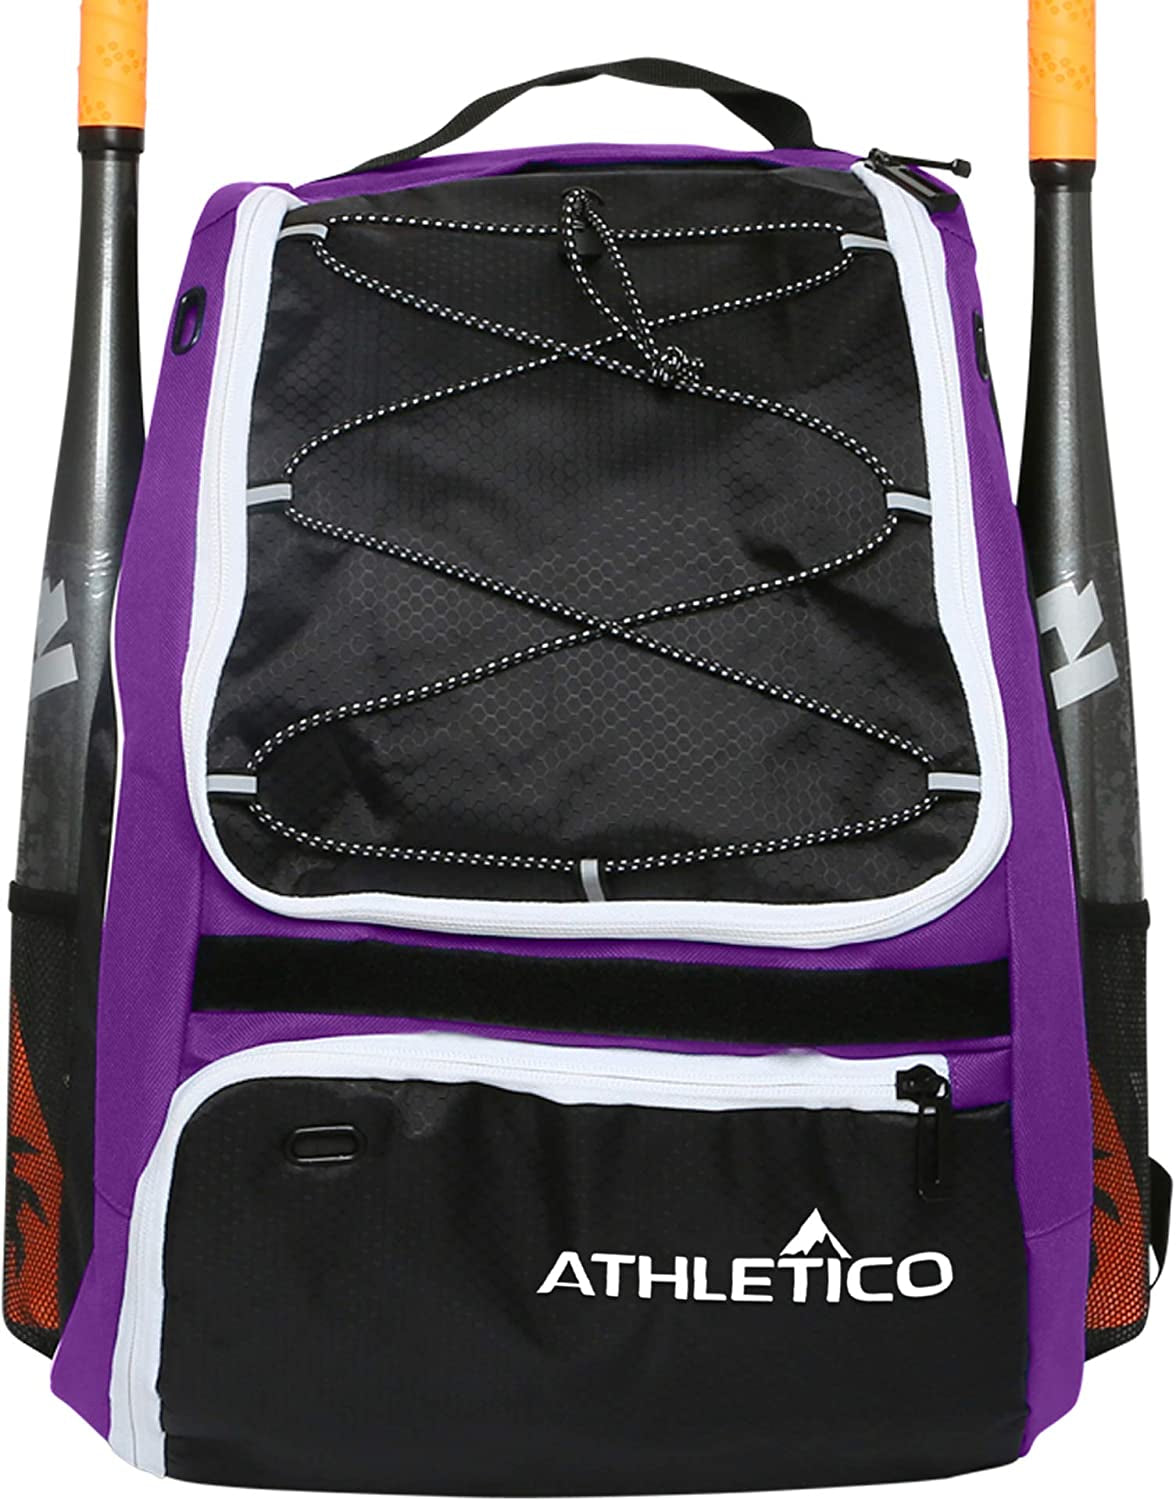 Athletico Youth Baseball Bag - Bat Backpack for Baseball, T-Ball & Softball Equipment & Gear | Holds Bat, Helmet, Glove | Fence Hook